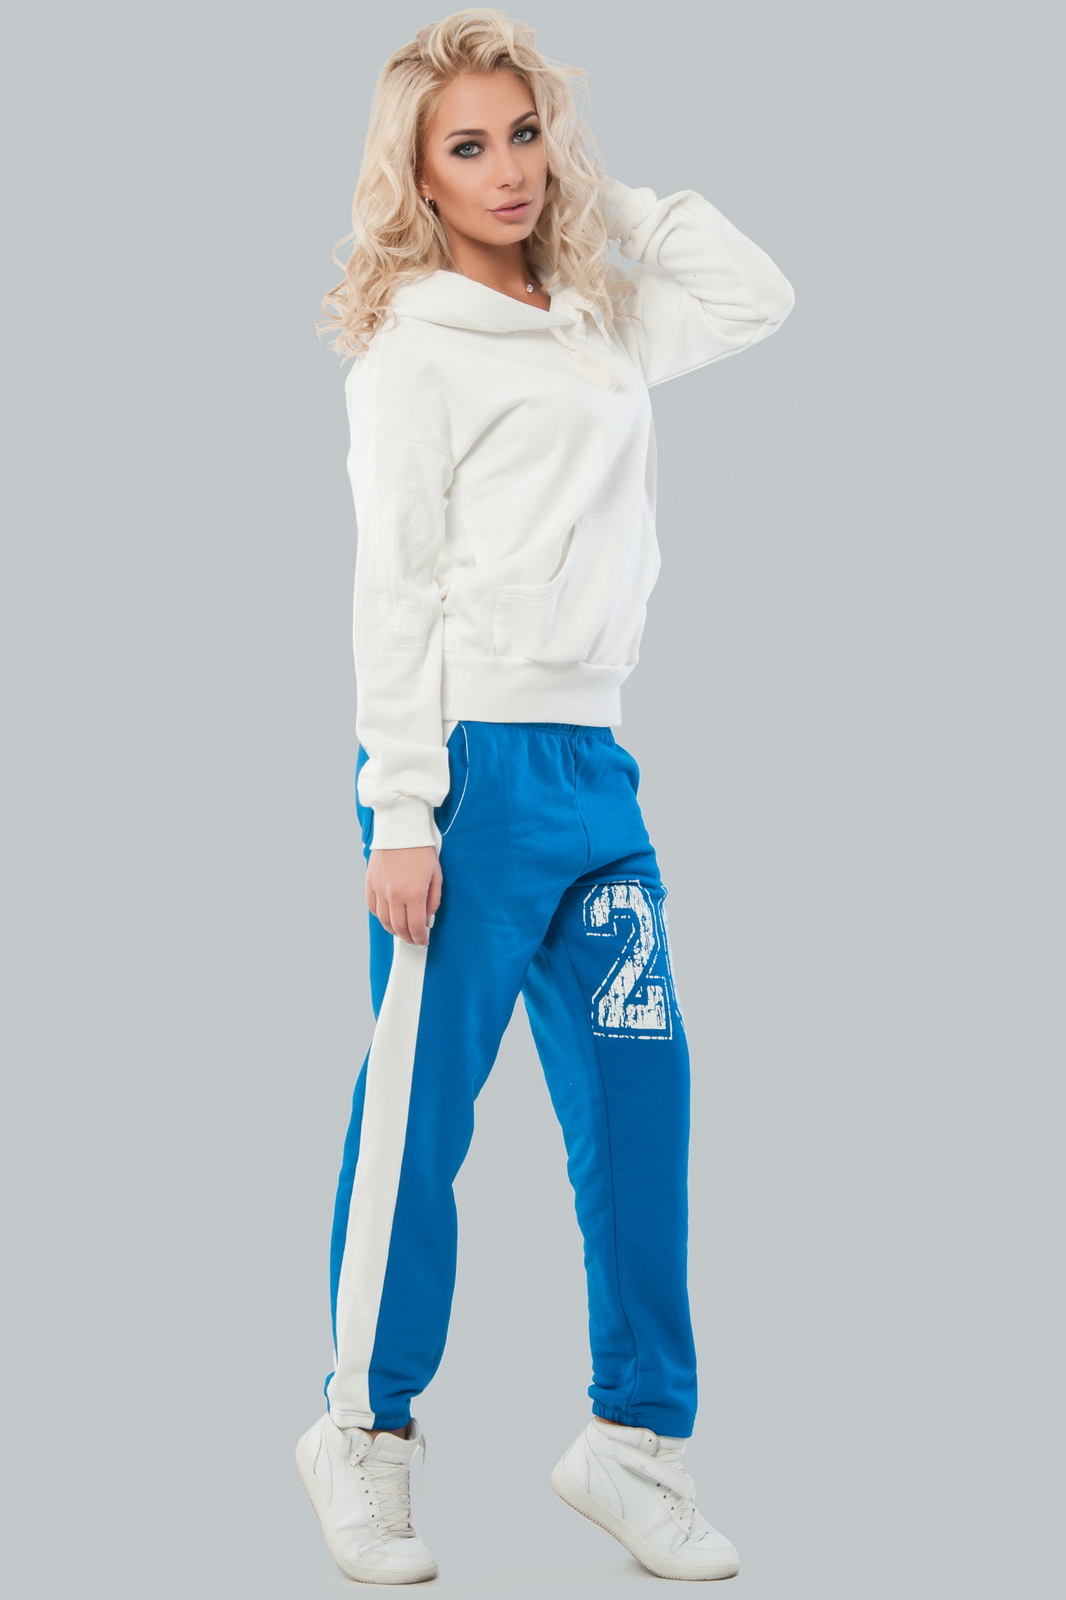 Спортивный костюм женский синий с белым